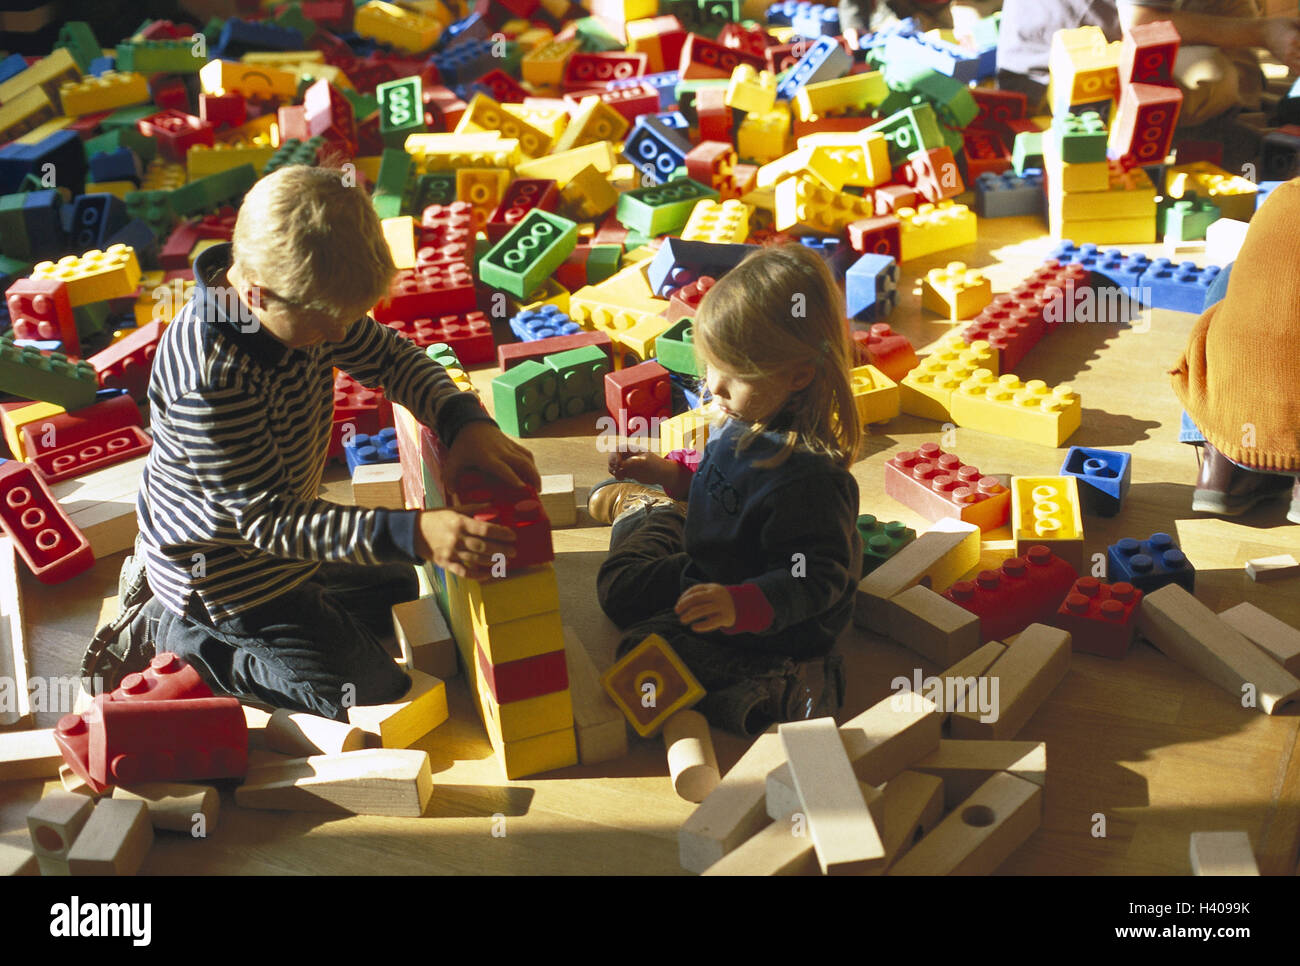 Les enfants, les jeux de couleurs vives, pièces, assemblage, des jouets,  des jouets, des jouets, des briques lego, des composants, de l'enfance, la  créativité, la concentration, l'extrait, la capacité d'apprentissage, de  compétences